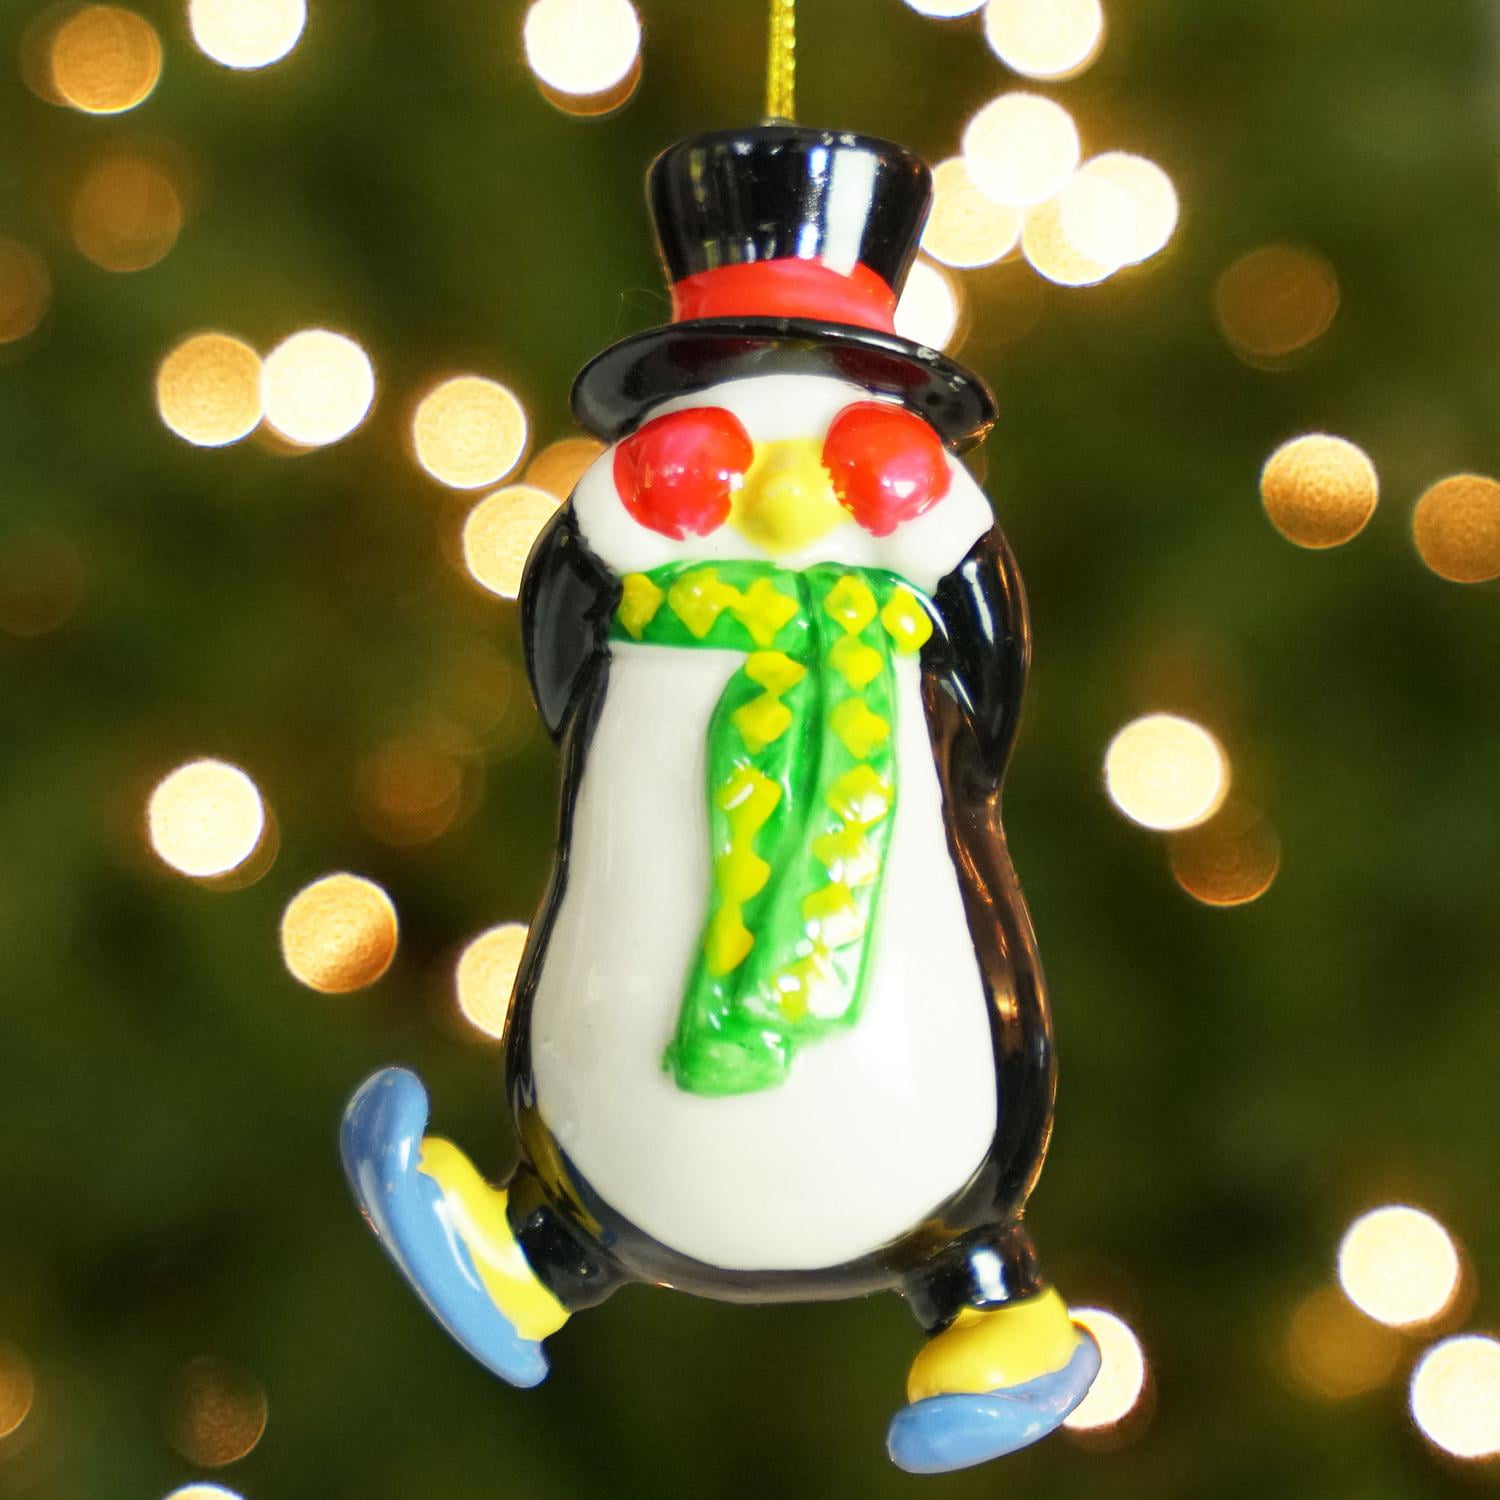 Penguins Ornament Kurt Adler Resin Festive Christmas Lights Set of 2 